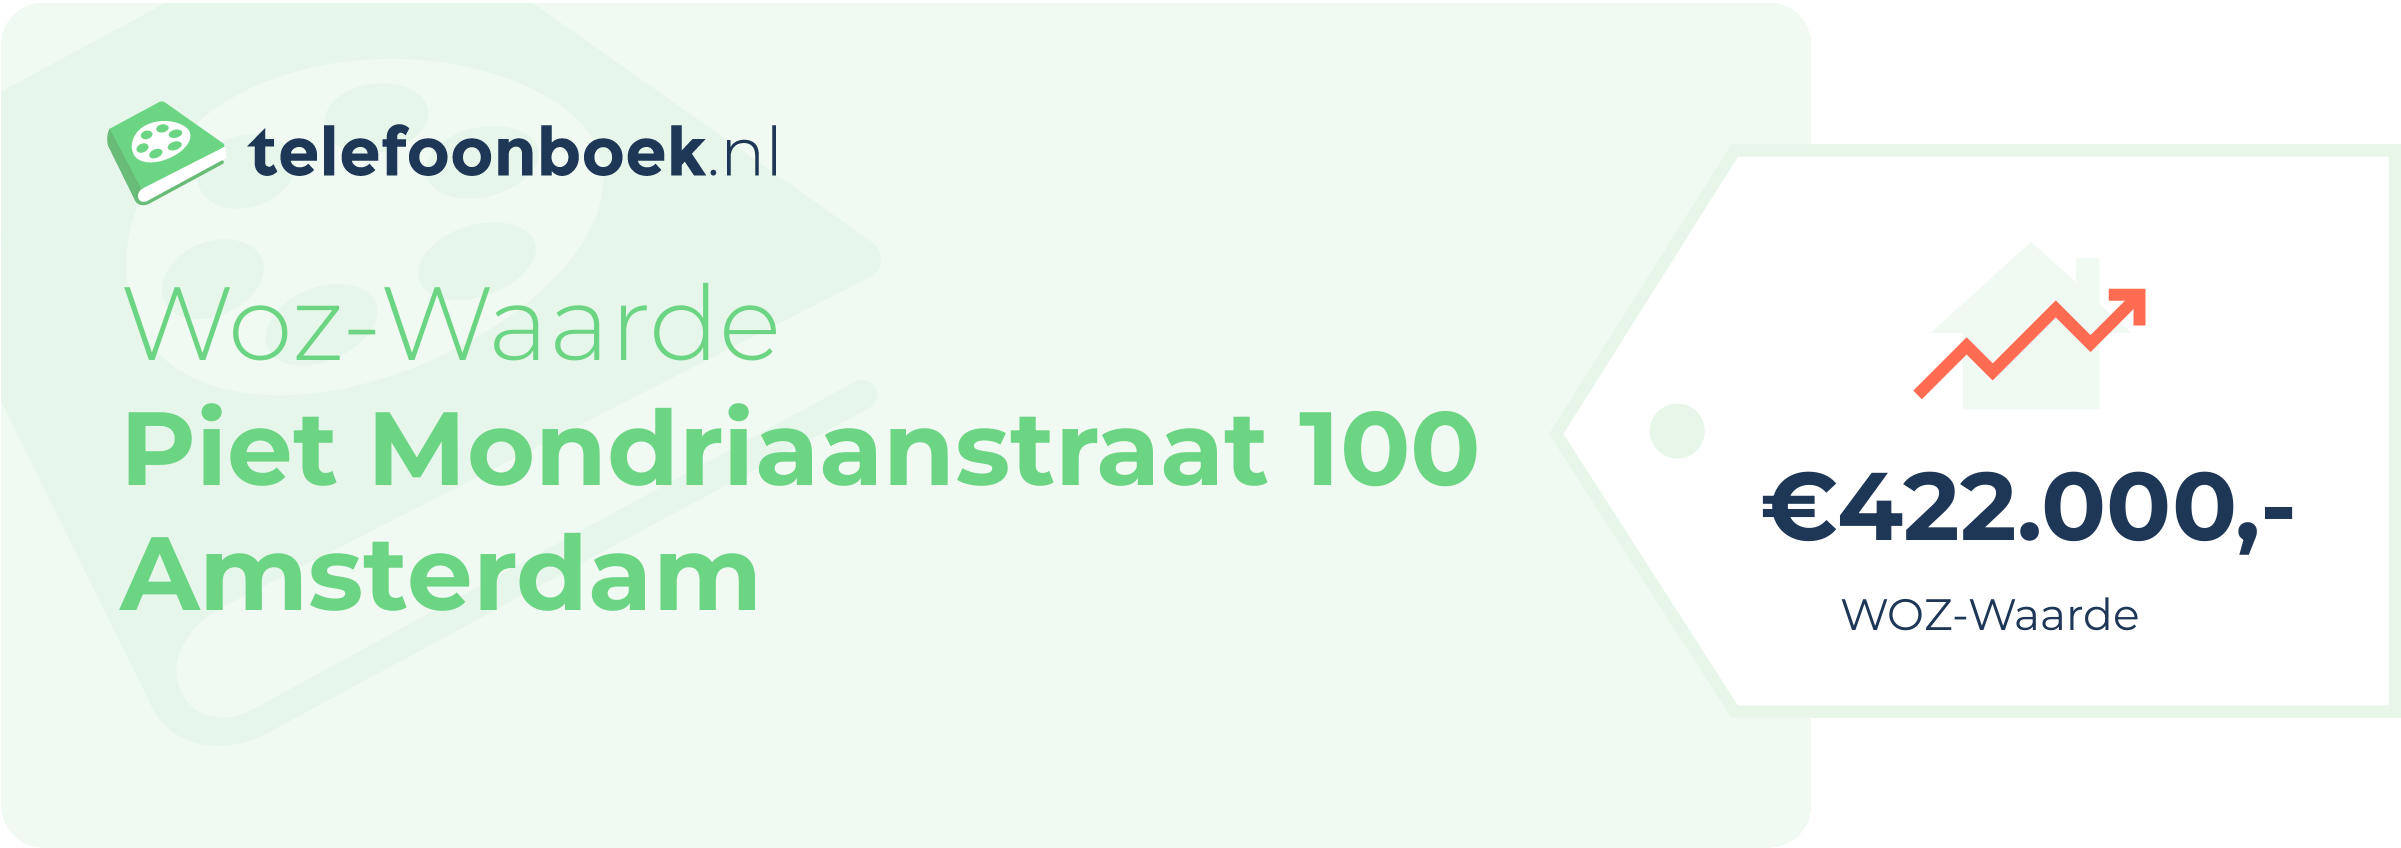 WOZ-waarde Piet Mondriaanstraat 100 Amsterdam